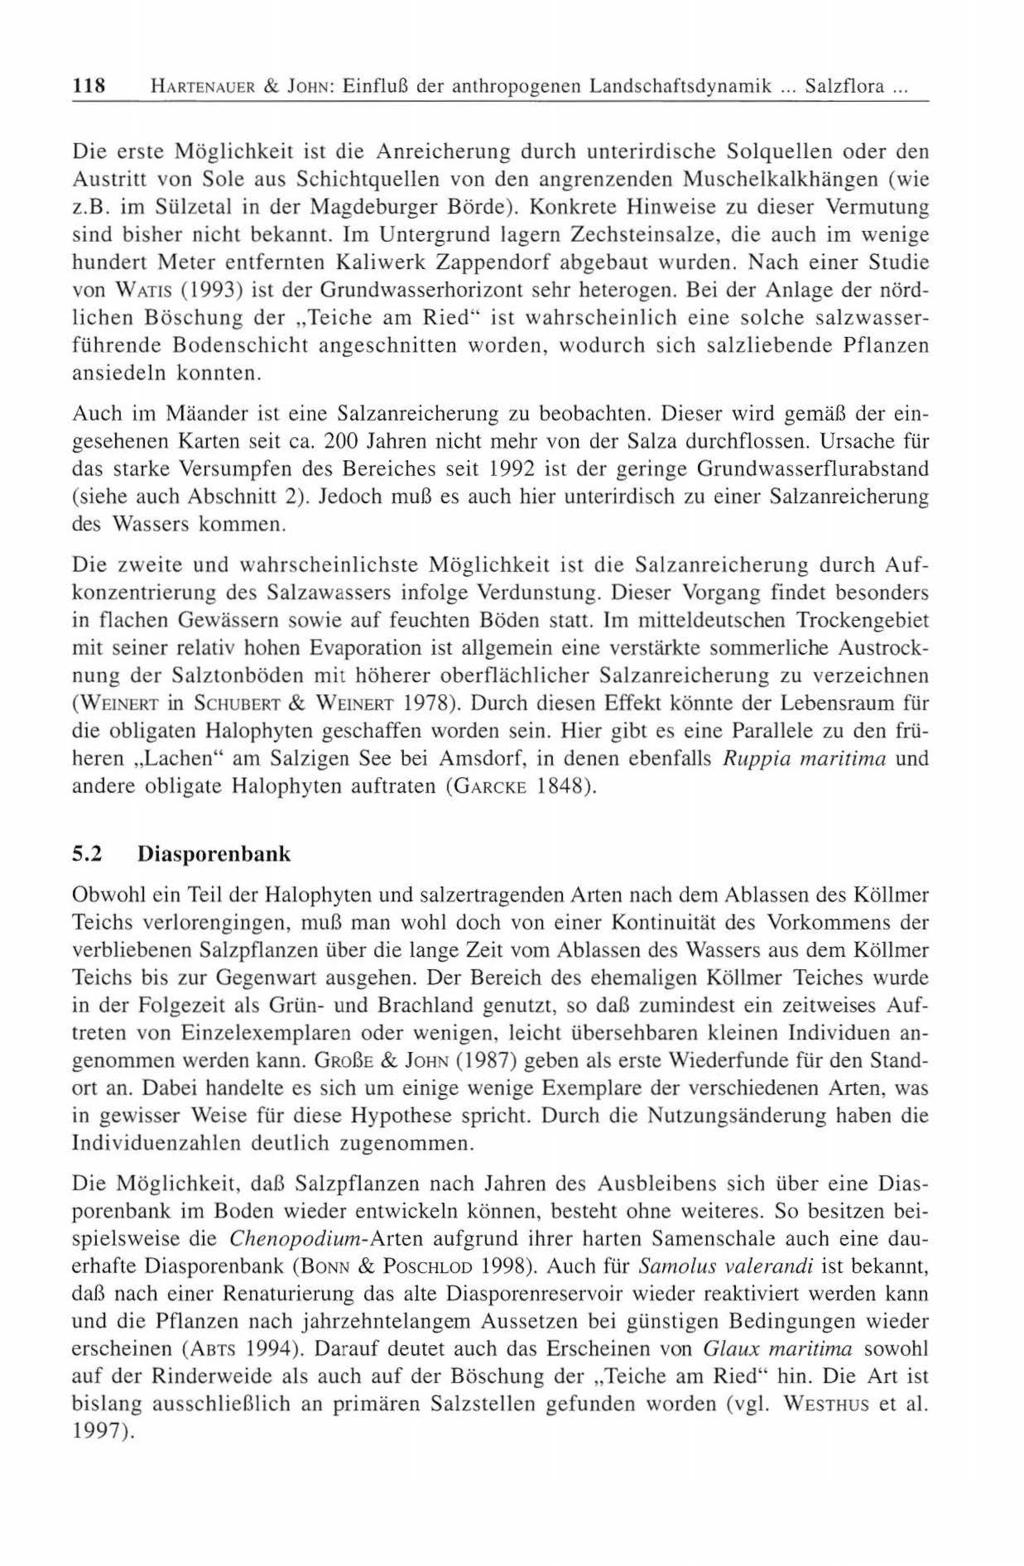 118 H ARTENAUER & JOHN: Einfluß der anthropogenen Landschaftsdynamik... Salzflora.